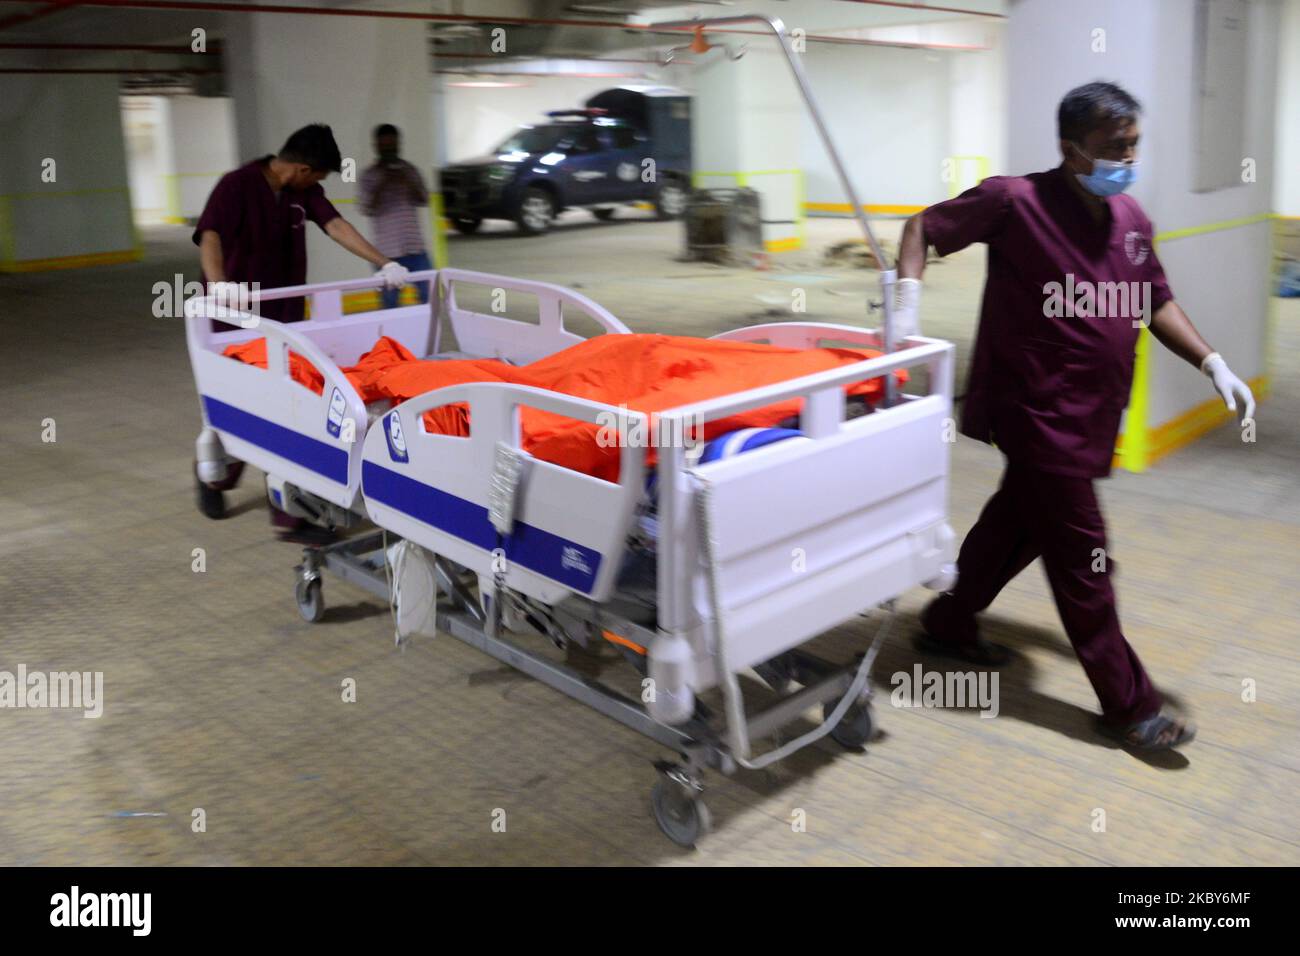 (NOTE AUX ÉDITEURS : l'image contient du contenu graphique.) Des cadavres de victimes soupçonnées d'explosion de gaz sont vus dans une morgue d'hôpital à Dhaka, au Bangladesh, sur 5 septembre 2020. Une explosion de gaz présumée a déchiré une mosquée bangladaise, tuant au moins 12 personnes, tandis que des dizaines de personnes ont subi des brûlures potentiellement mortelles, a déclaré la police sur 5 septembre. (Photo par Mamunur Rashid/NurPhoto) Banque D'Images